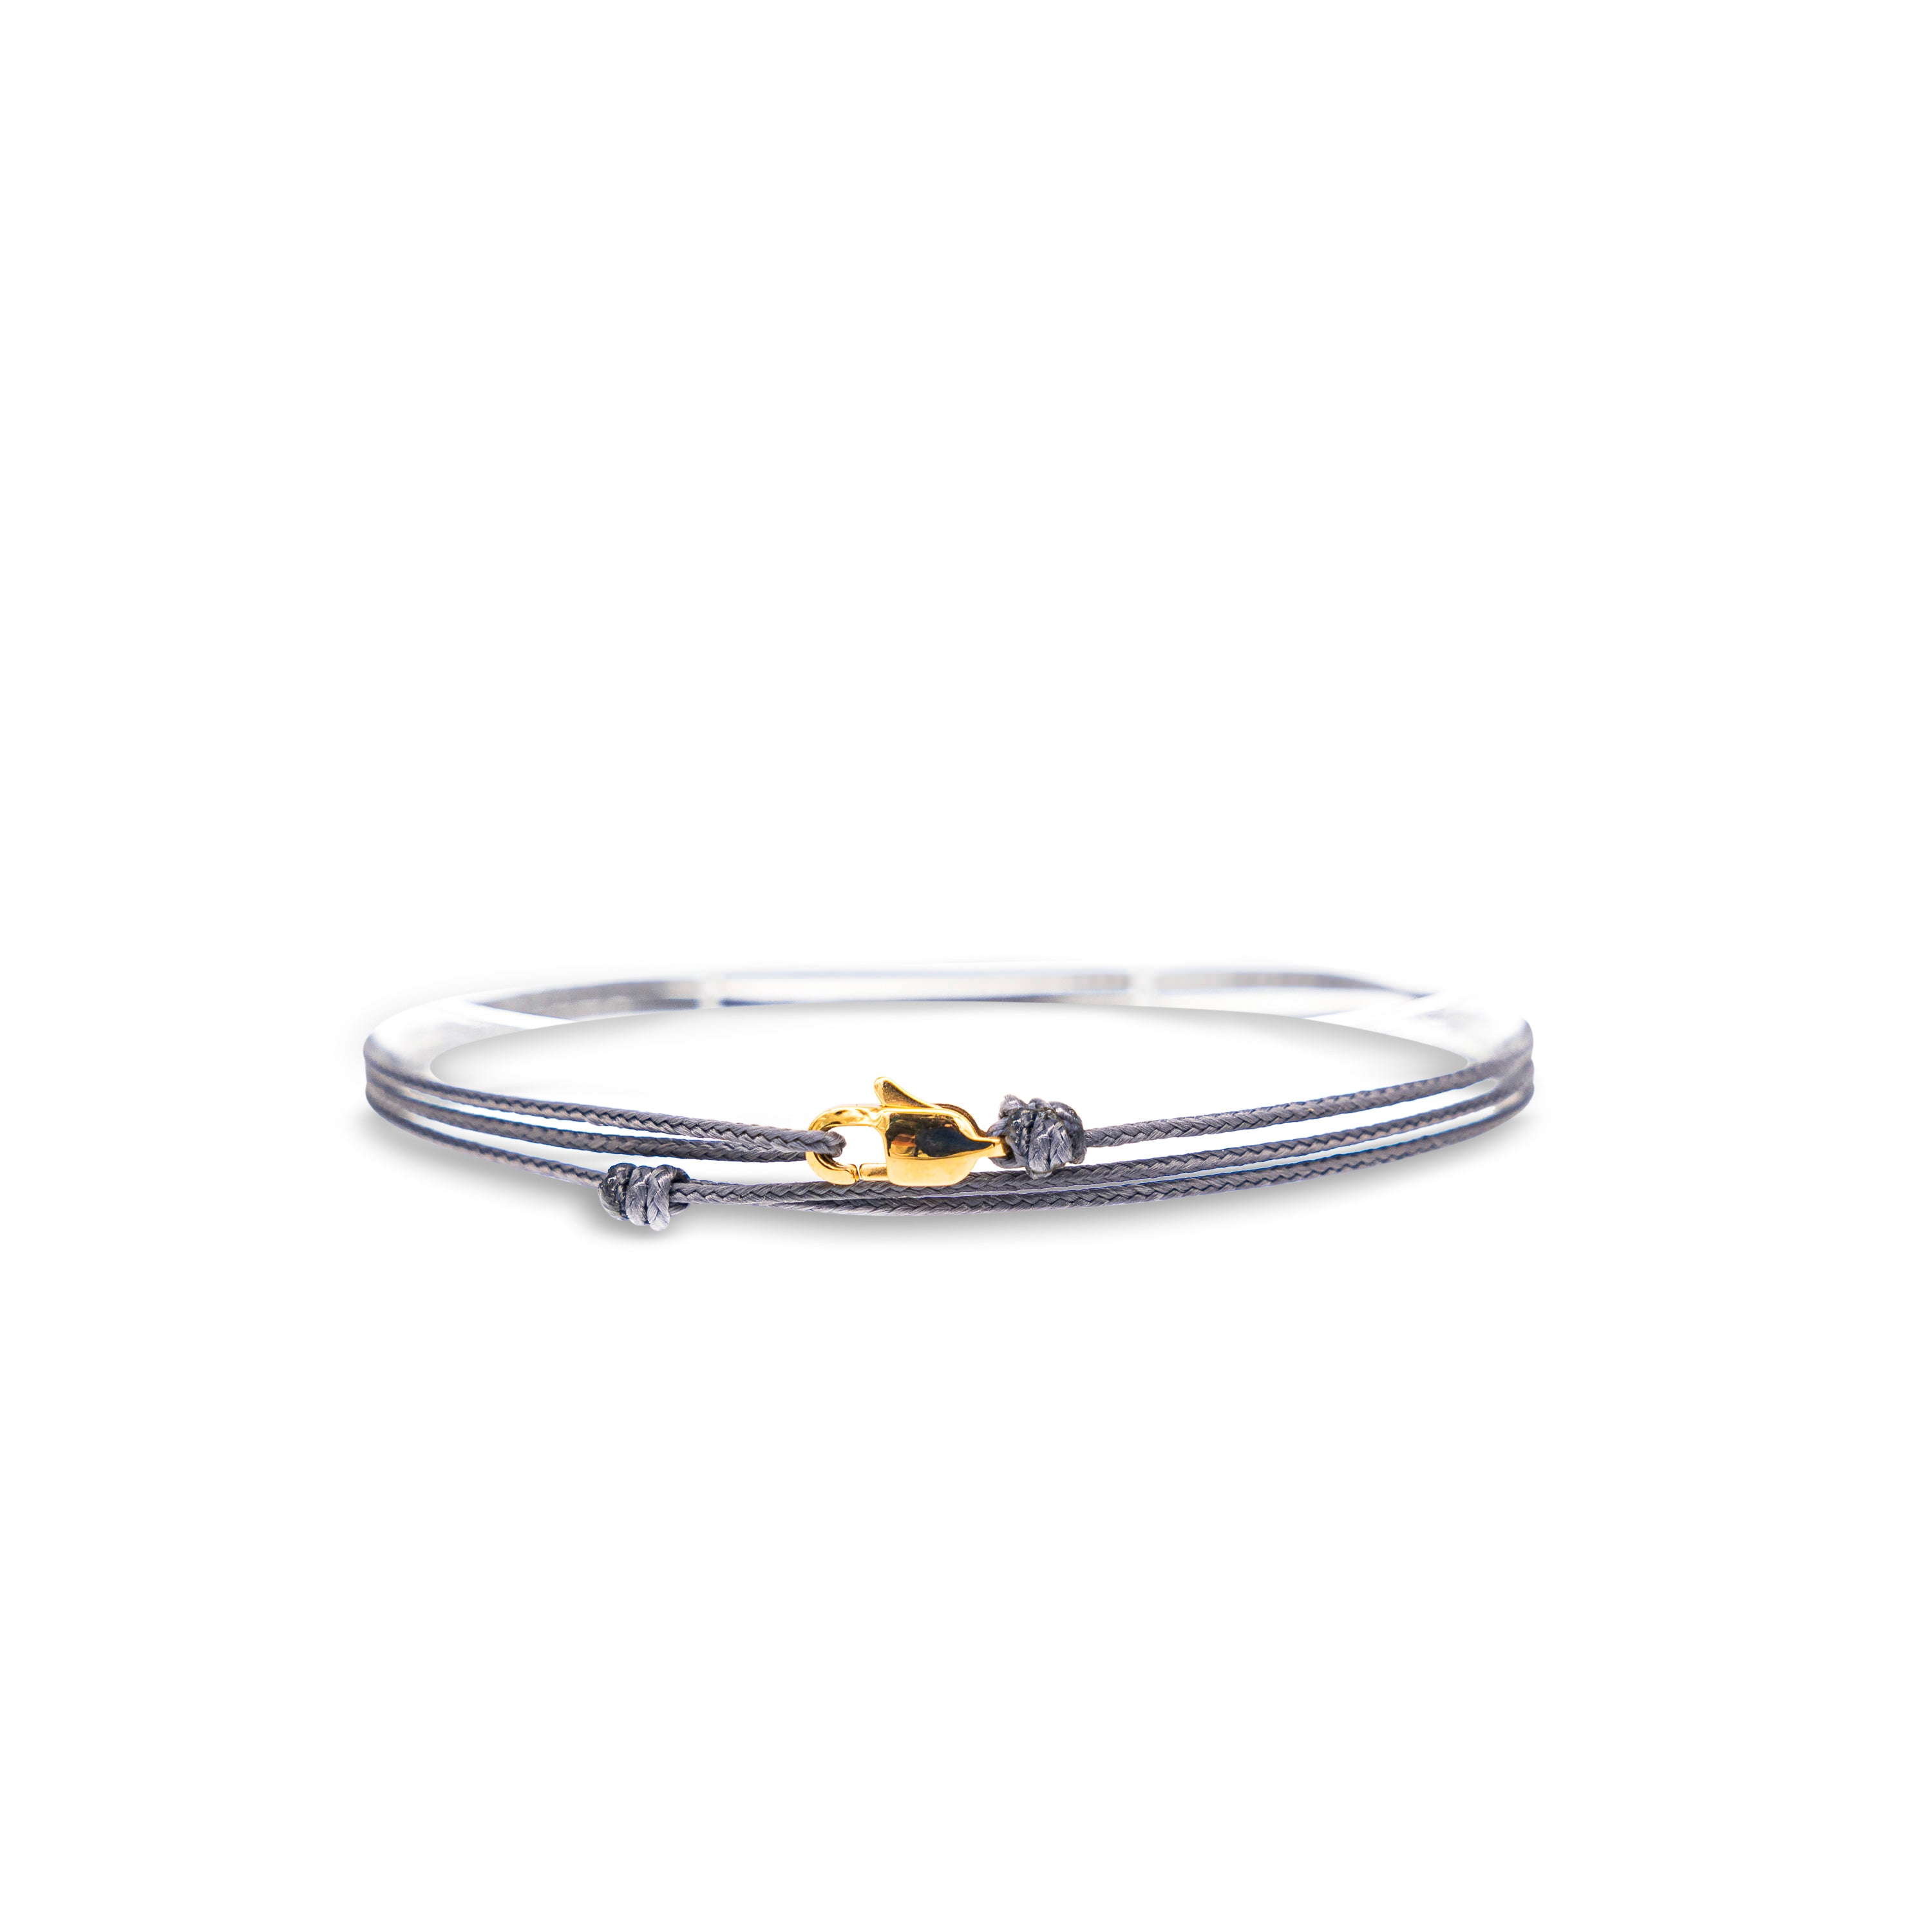 Snap Hook Wrap Bracelet - Gray Gold